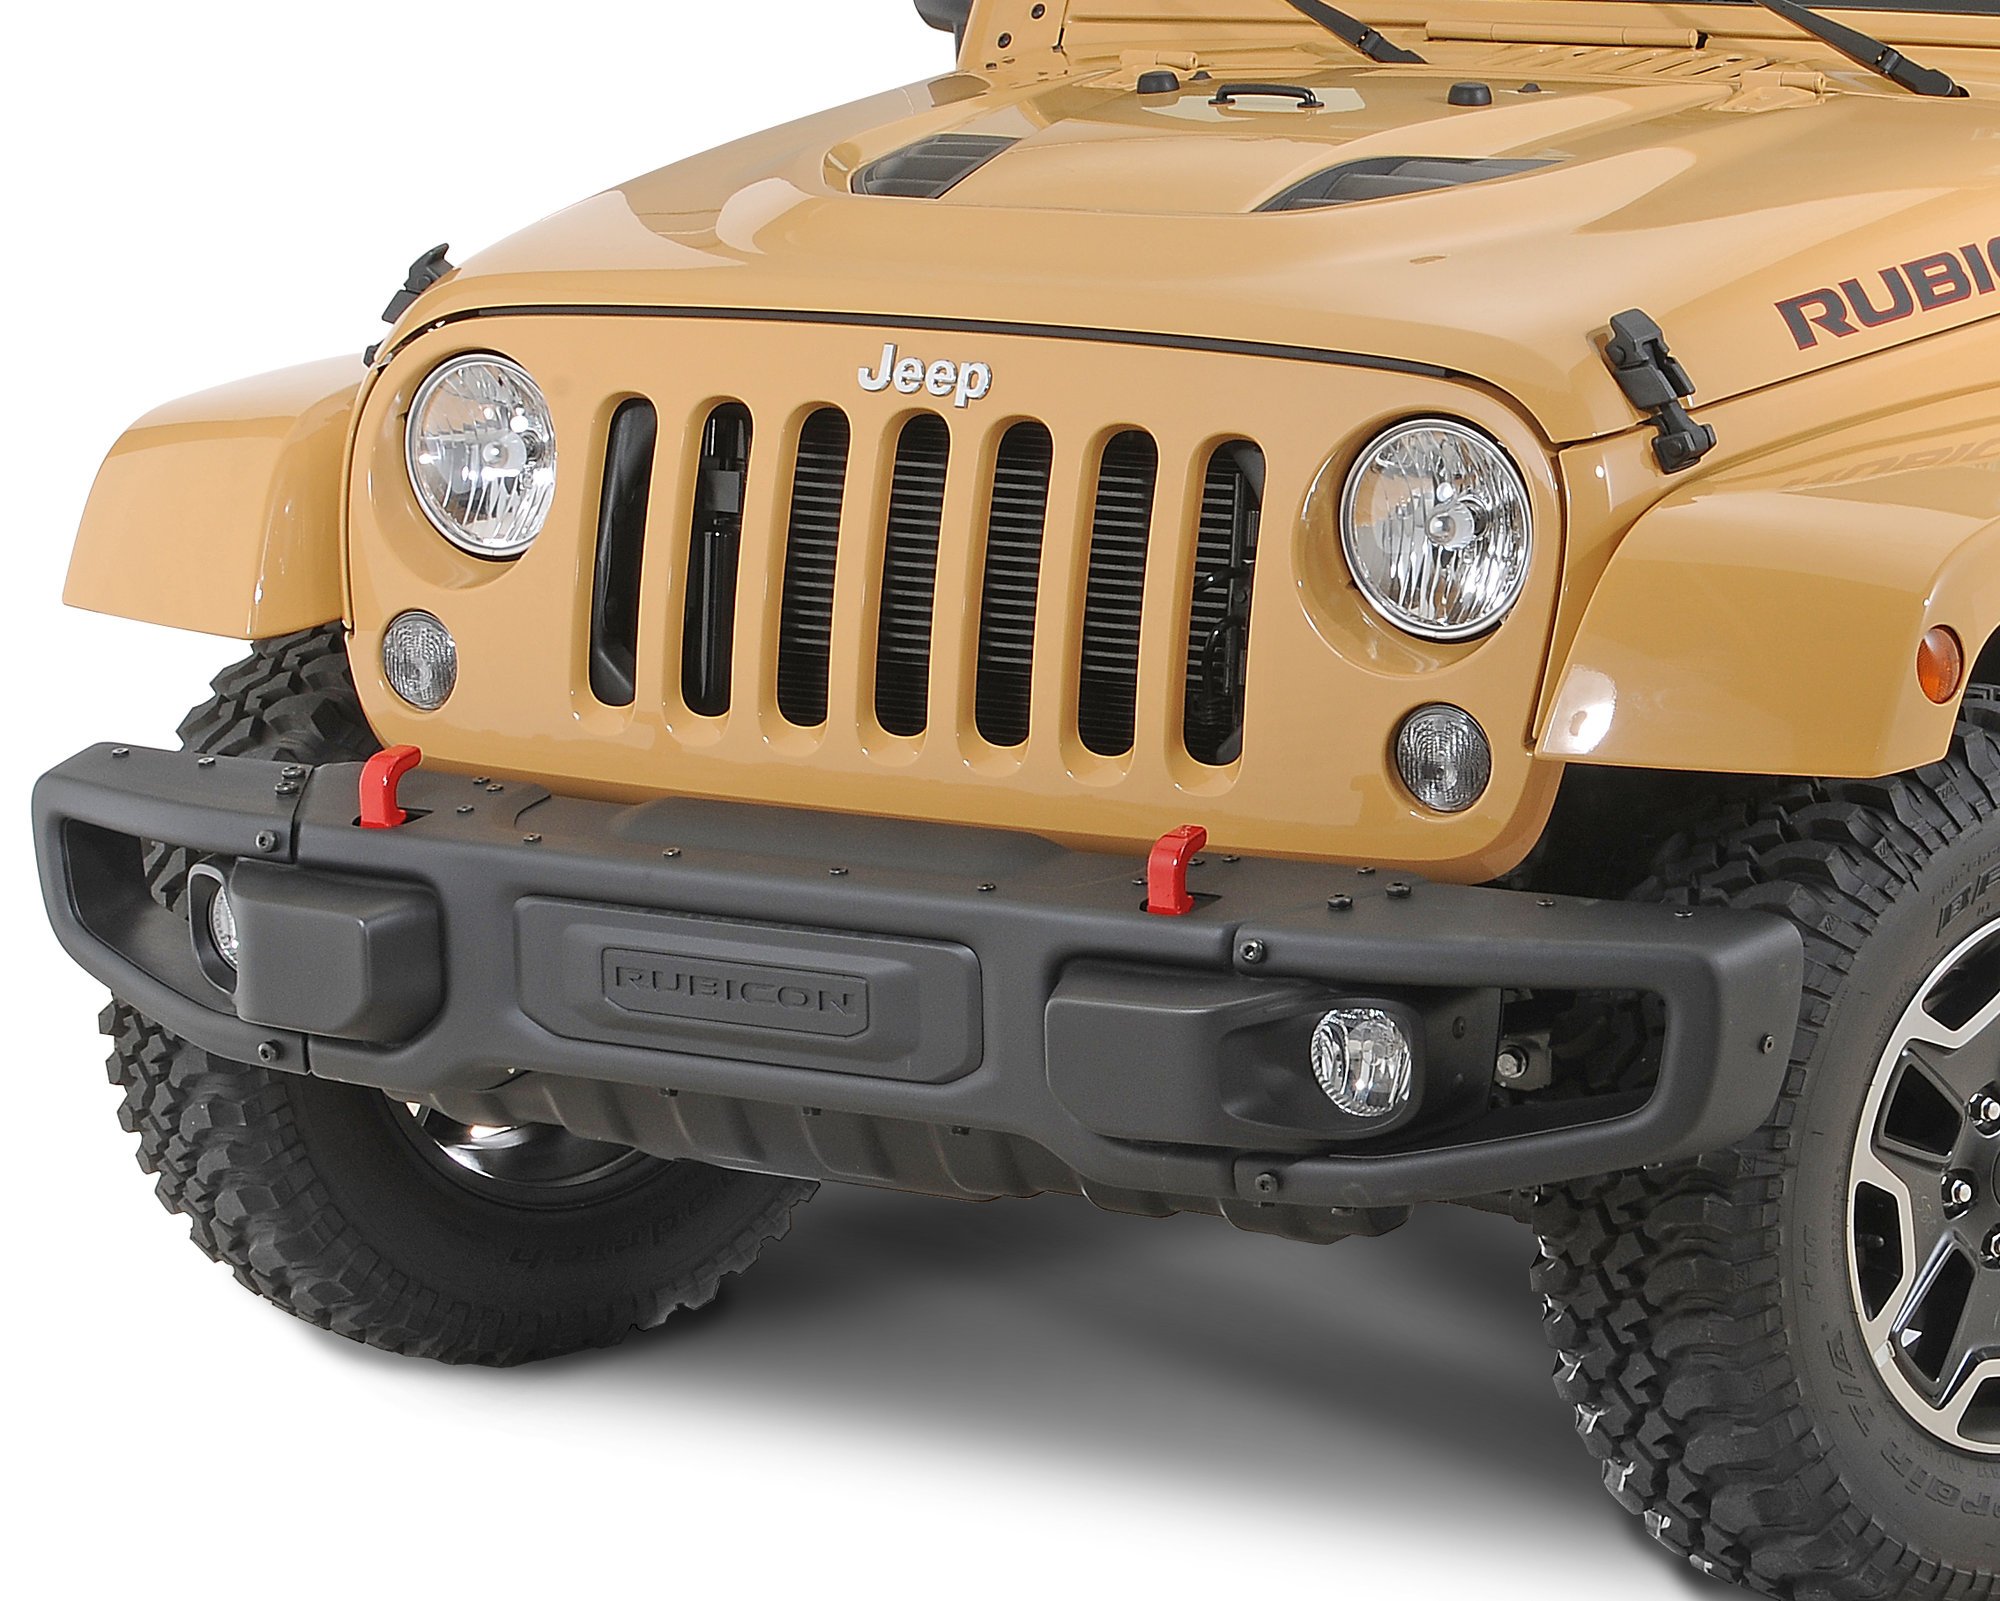 Actualizar 67+ imagen jeep wrangler 10th anniversary bumper